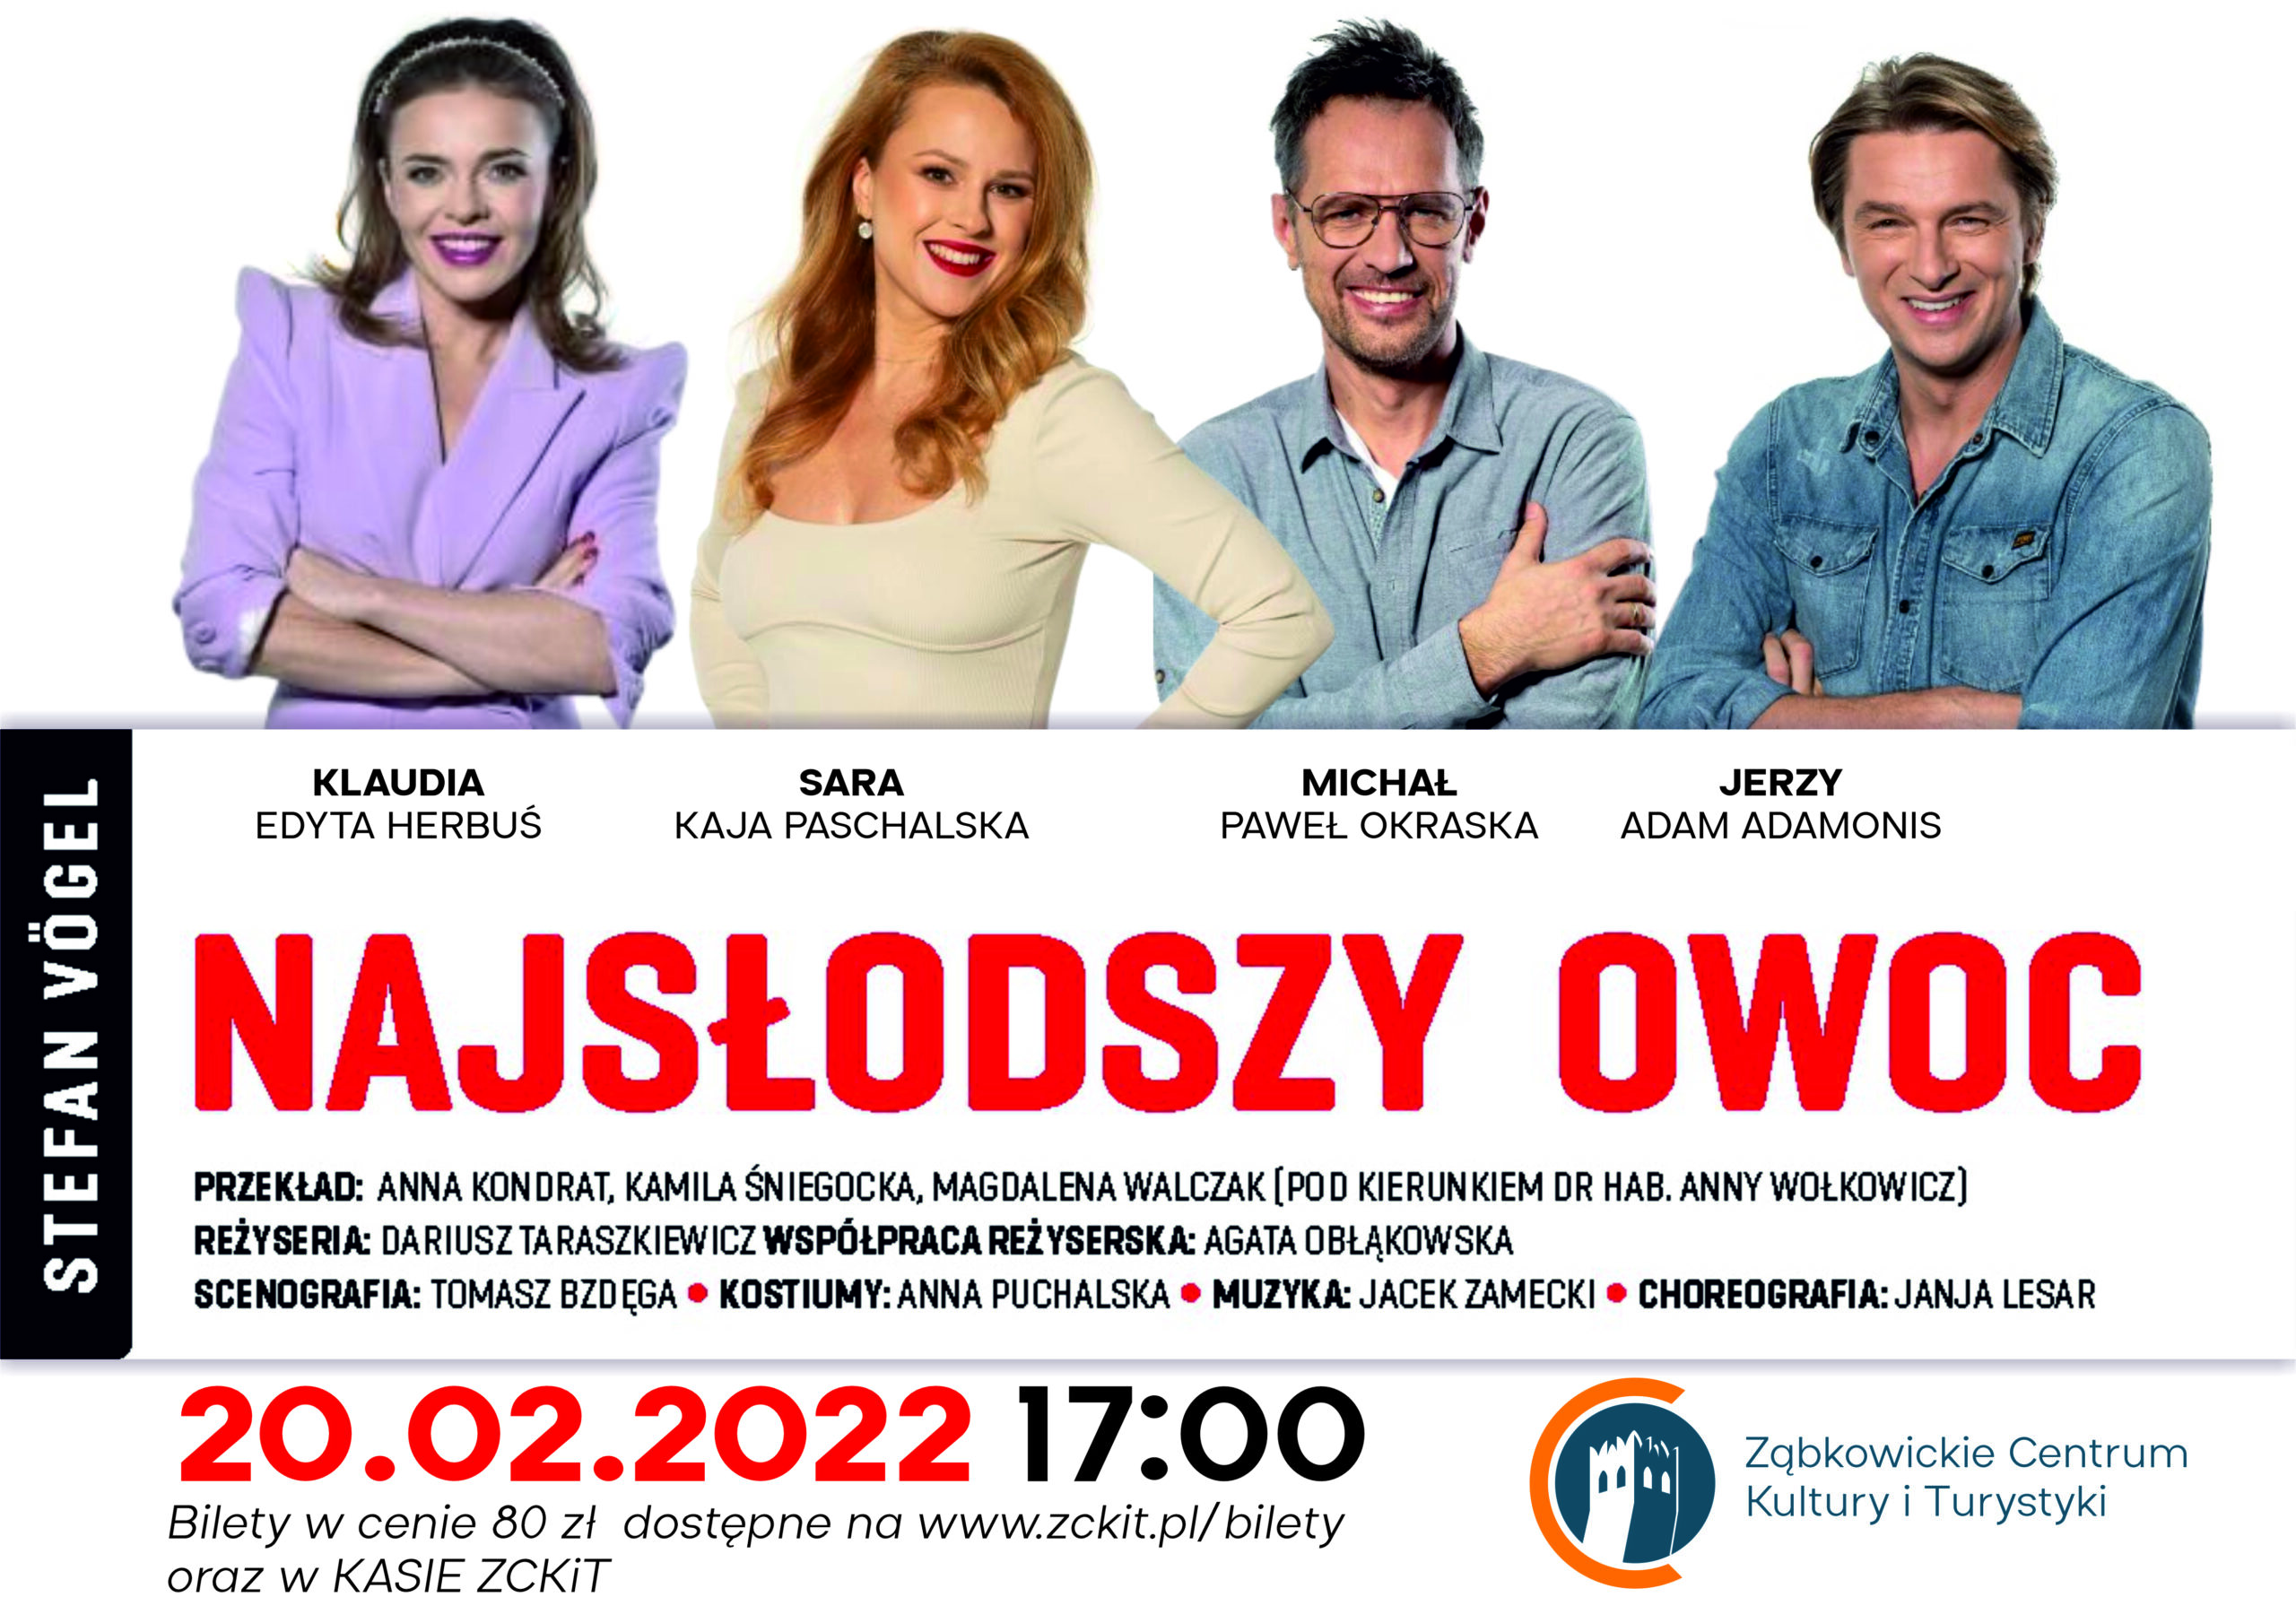 "NAJSŁODSZY OWOC" 20.02.2022r. godz.17:00 bilety w cenie 80zł dostępne na www.zckit.pl/bilety oraz w KASIE ZCKiT